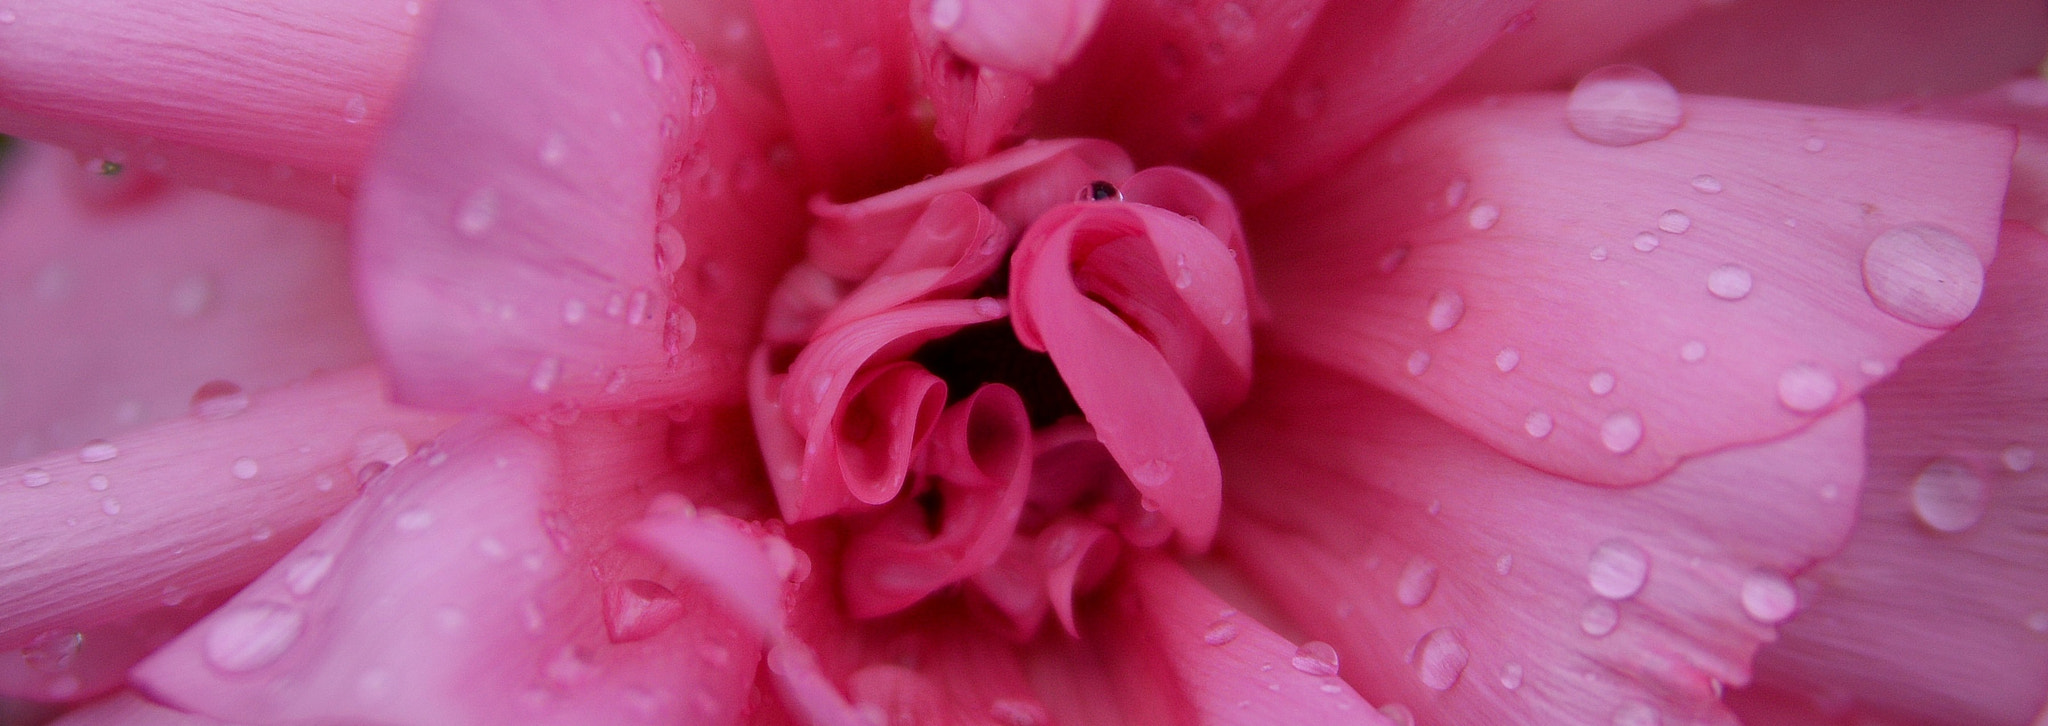 Nikon D3200 sample photo. Pink rose photography